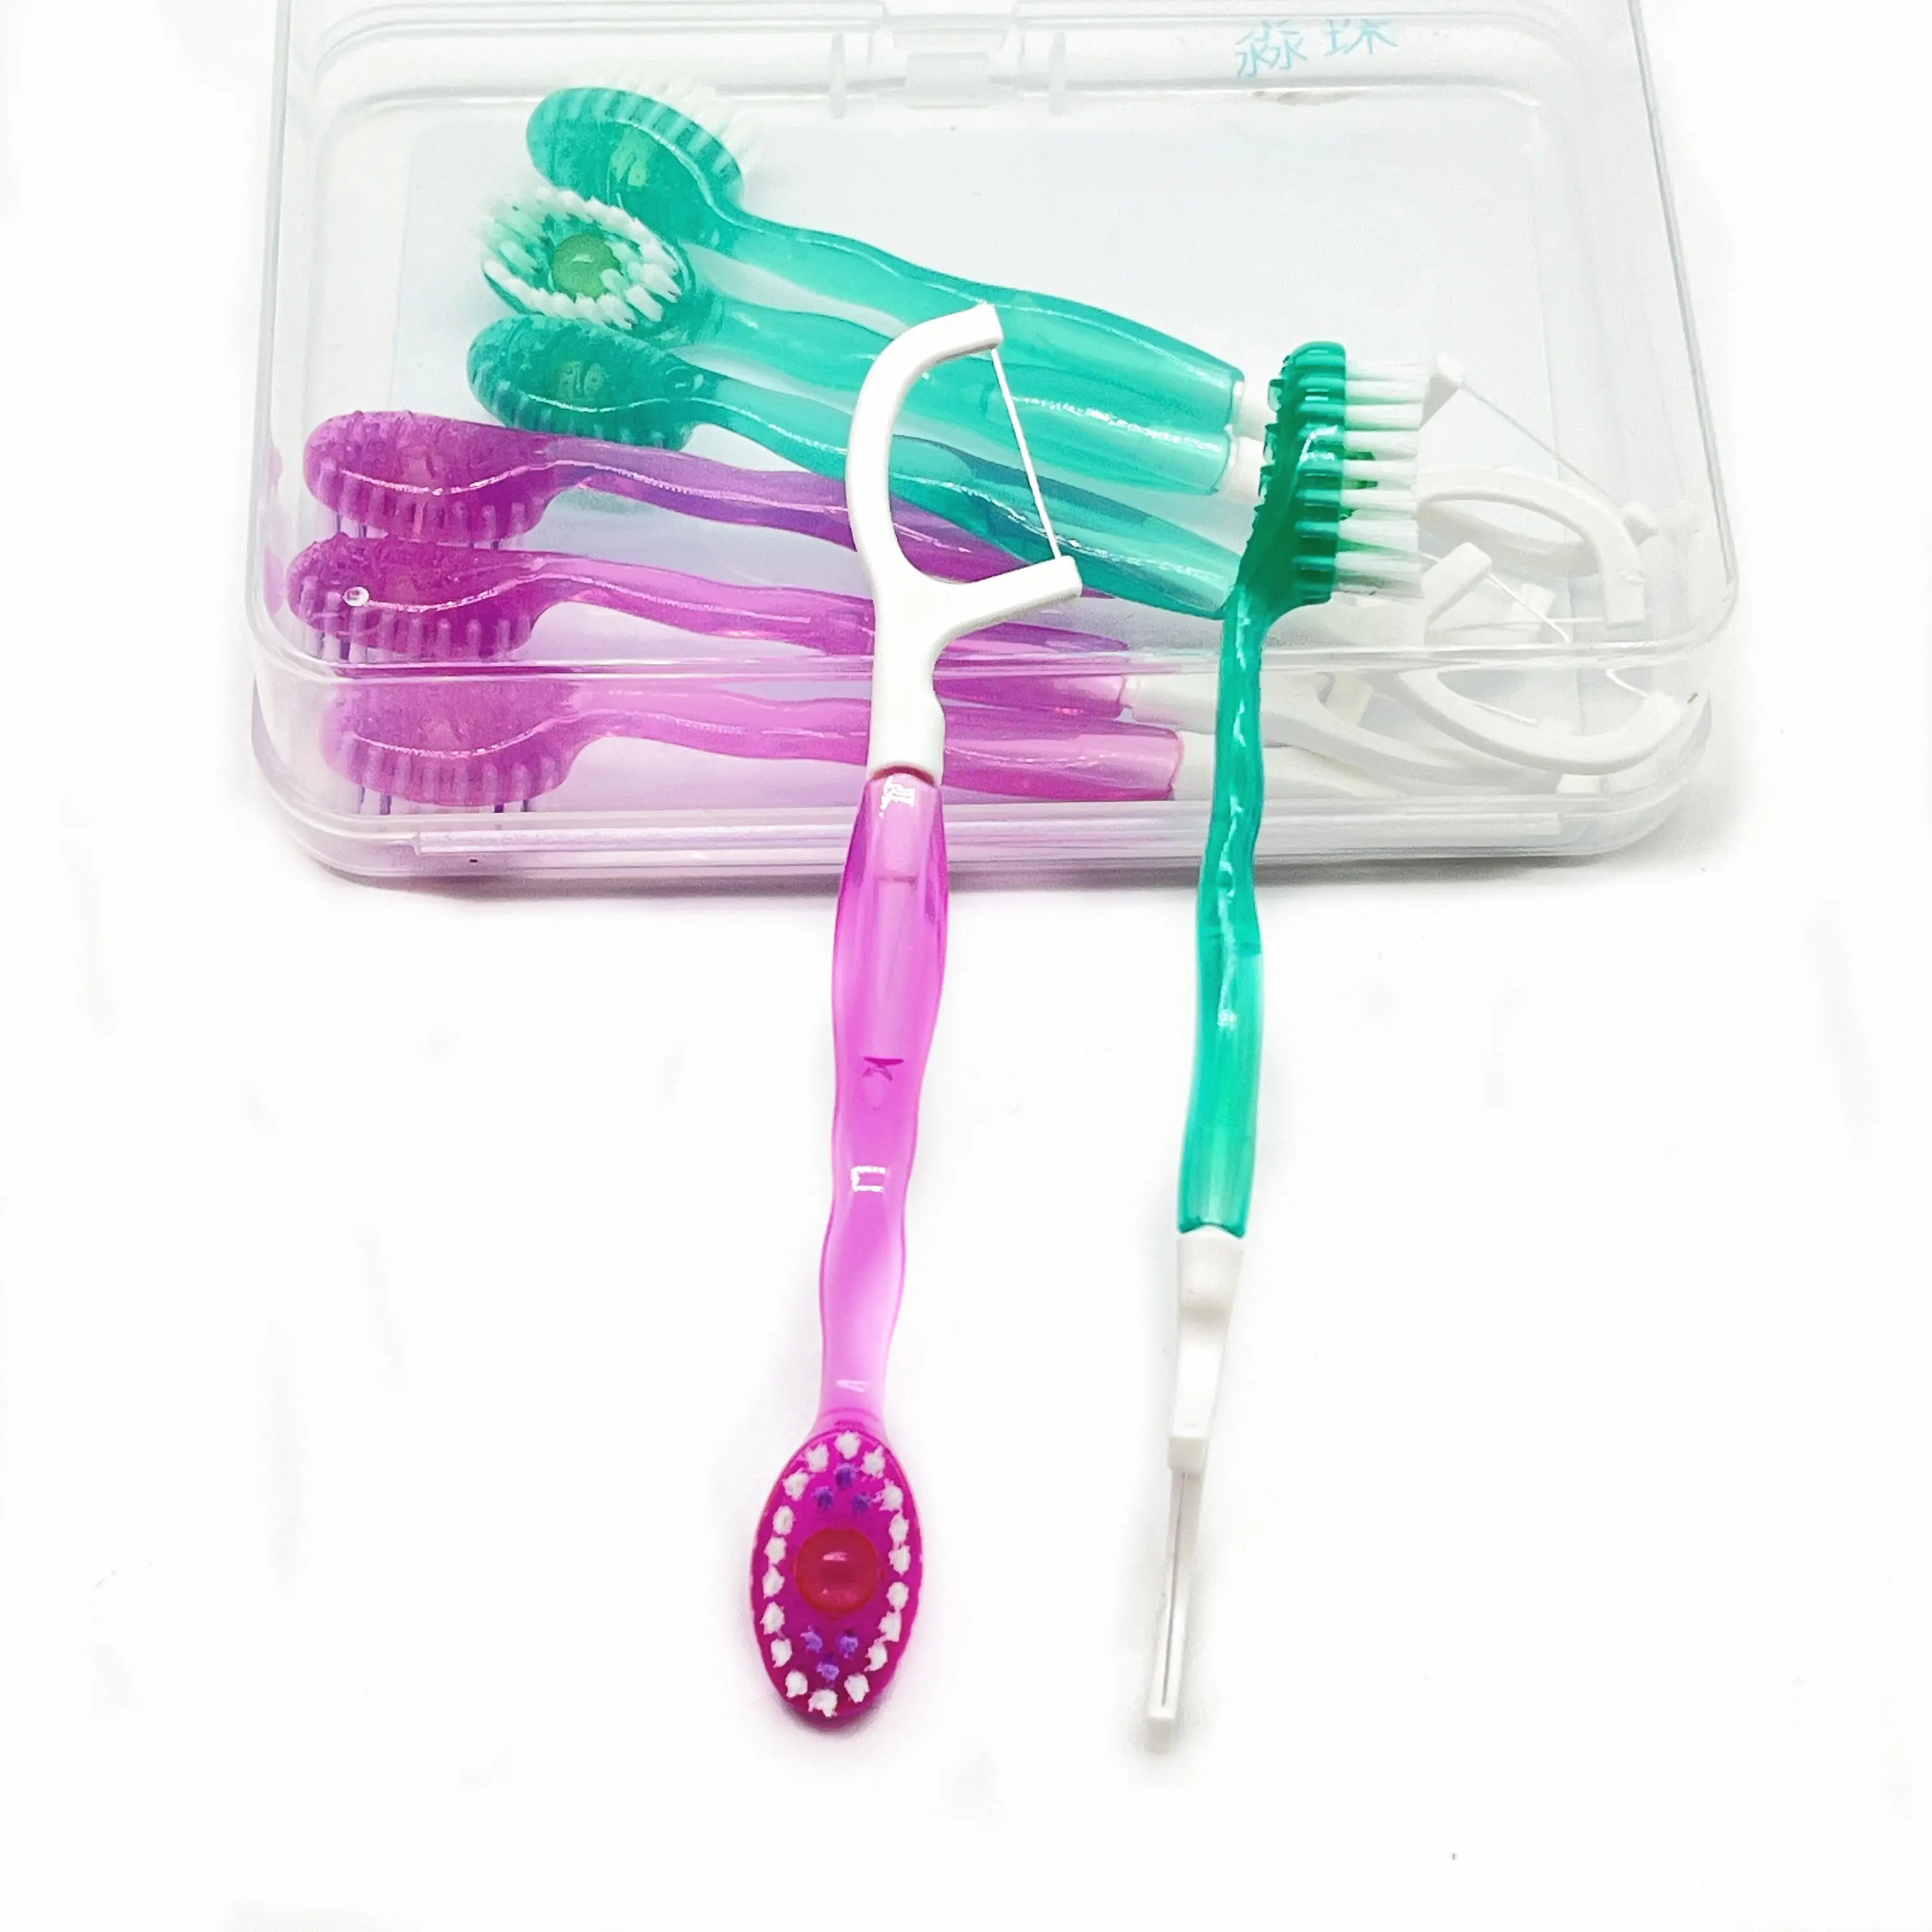 Cepillos de dientes desechables naturales de etiqueta privada con pasta de dientes